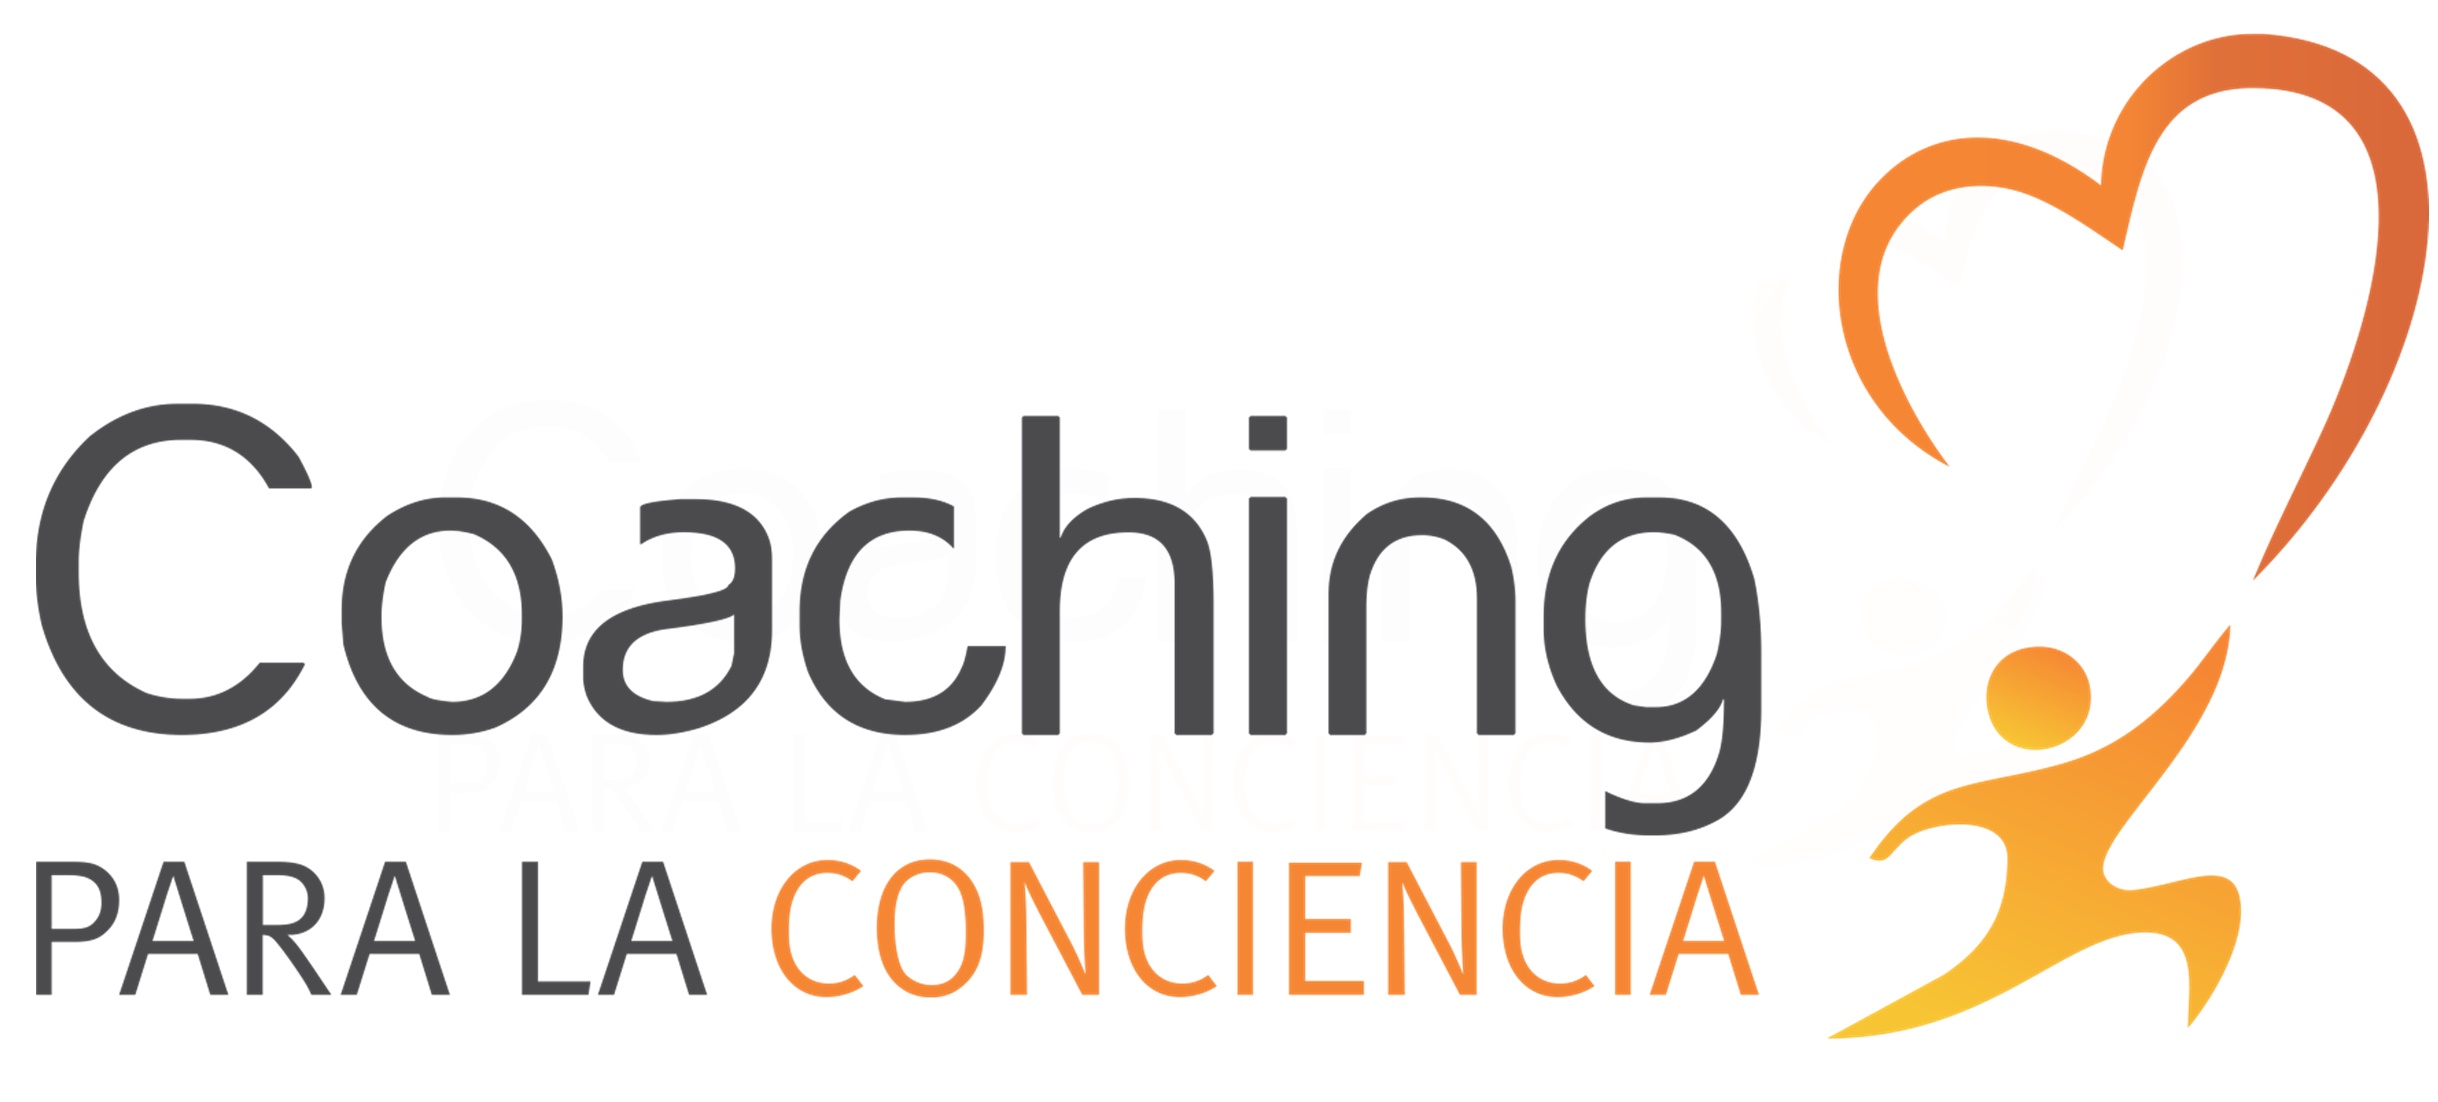 Coaching Para la Conciencia